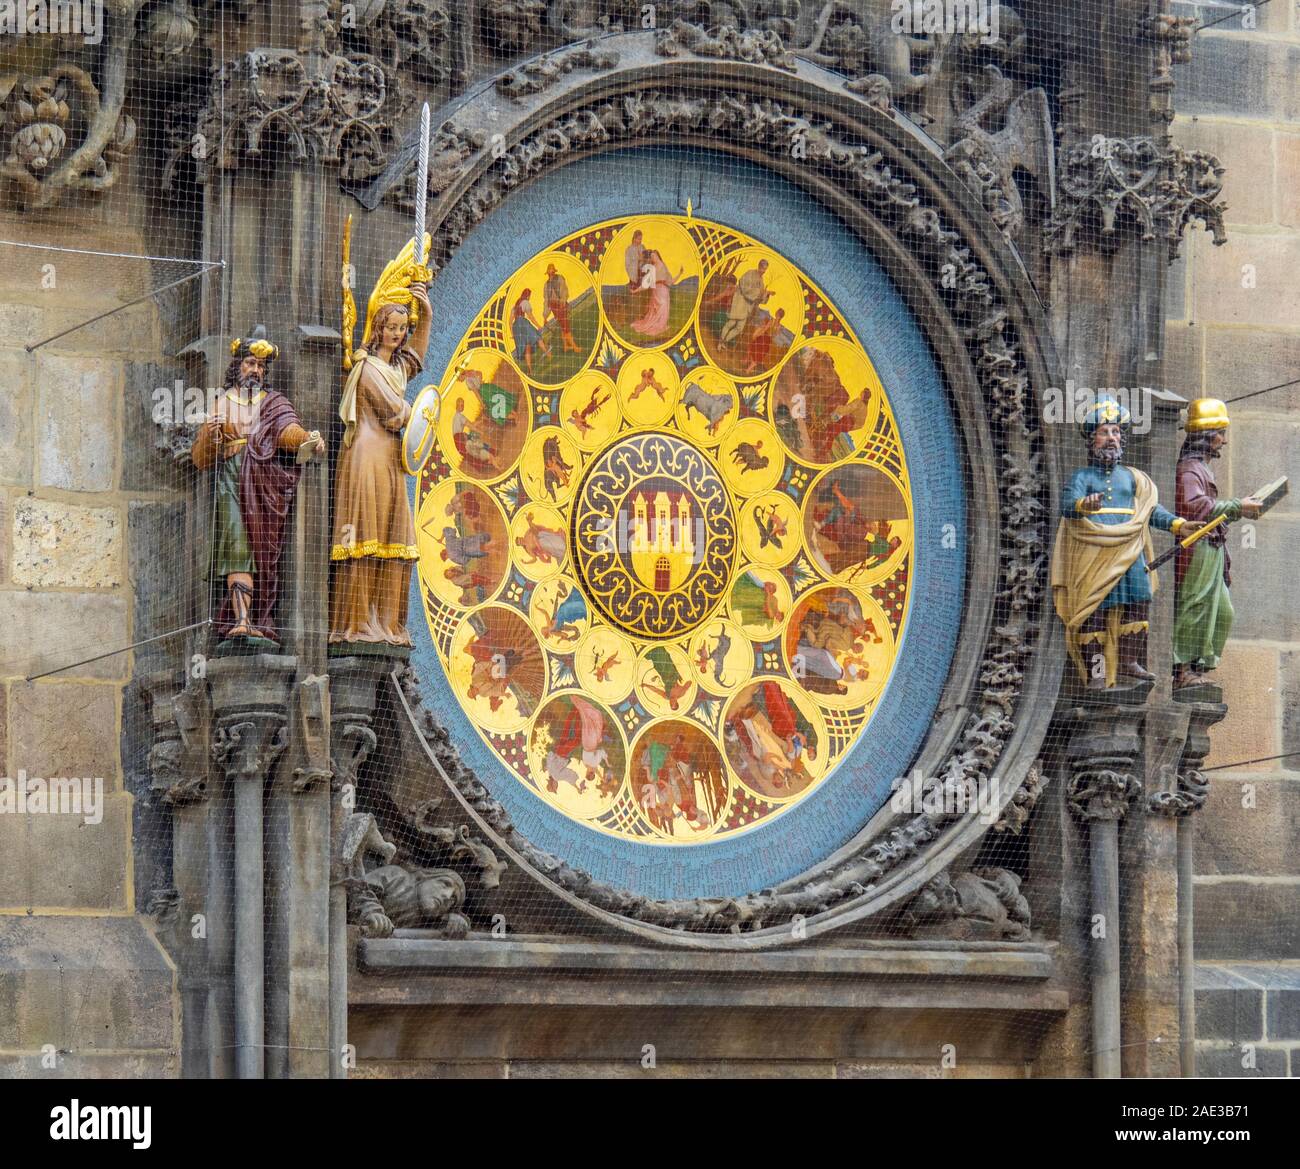 Placa de calendario del reloj astronómico de Praga medieval en el Antiguo Ayuntamiento, la torre del reloj Plaza de la Ciudad Vieja de Praga República Checa Foto de stock